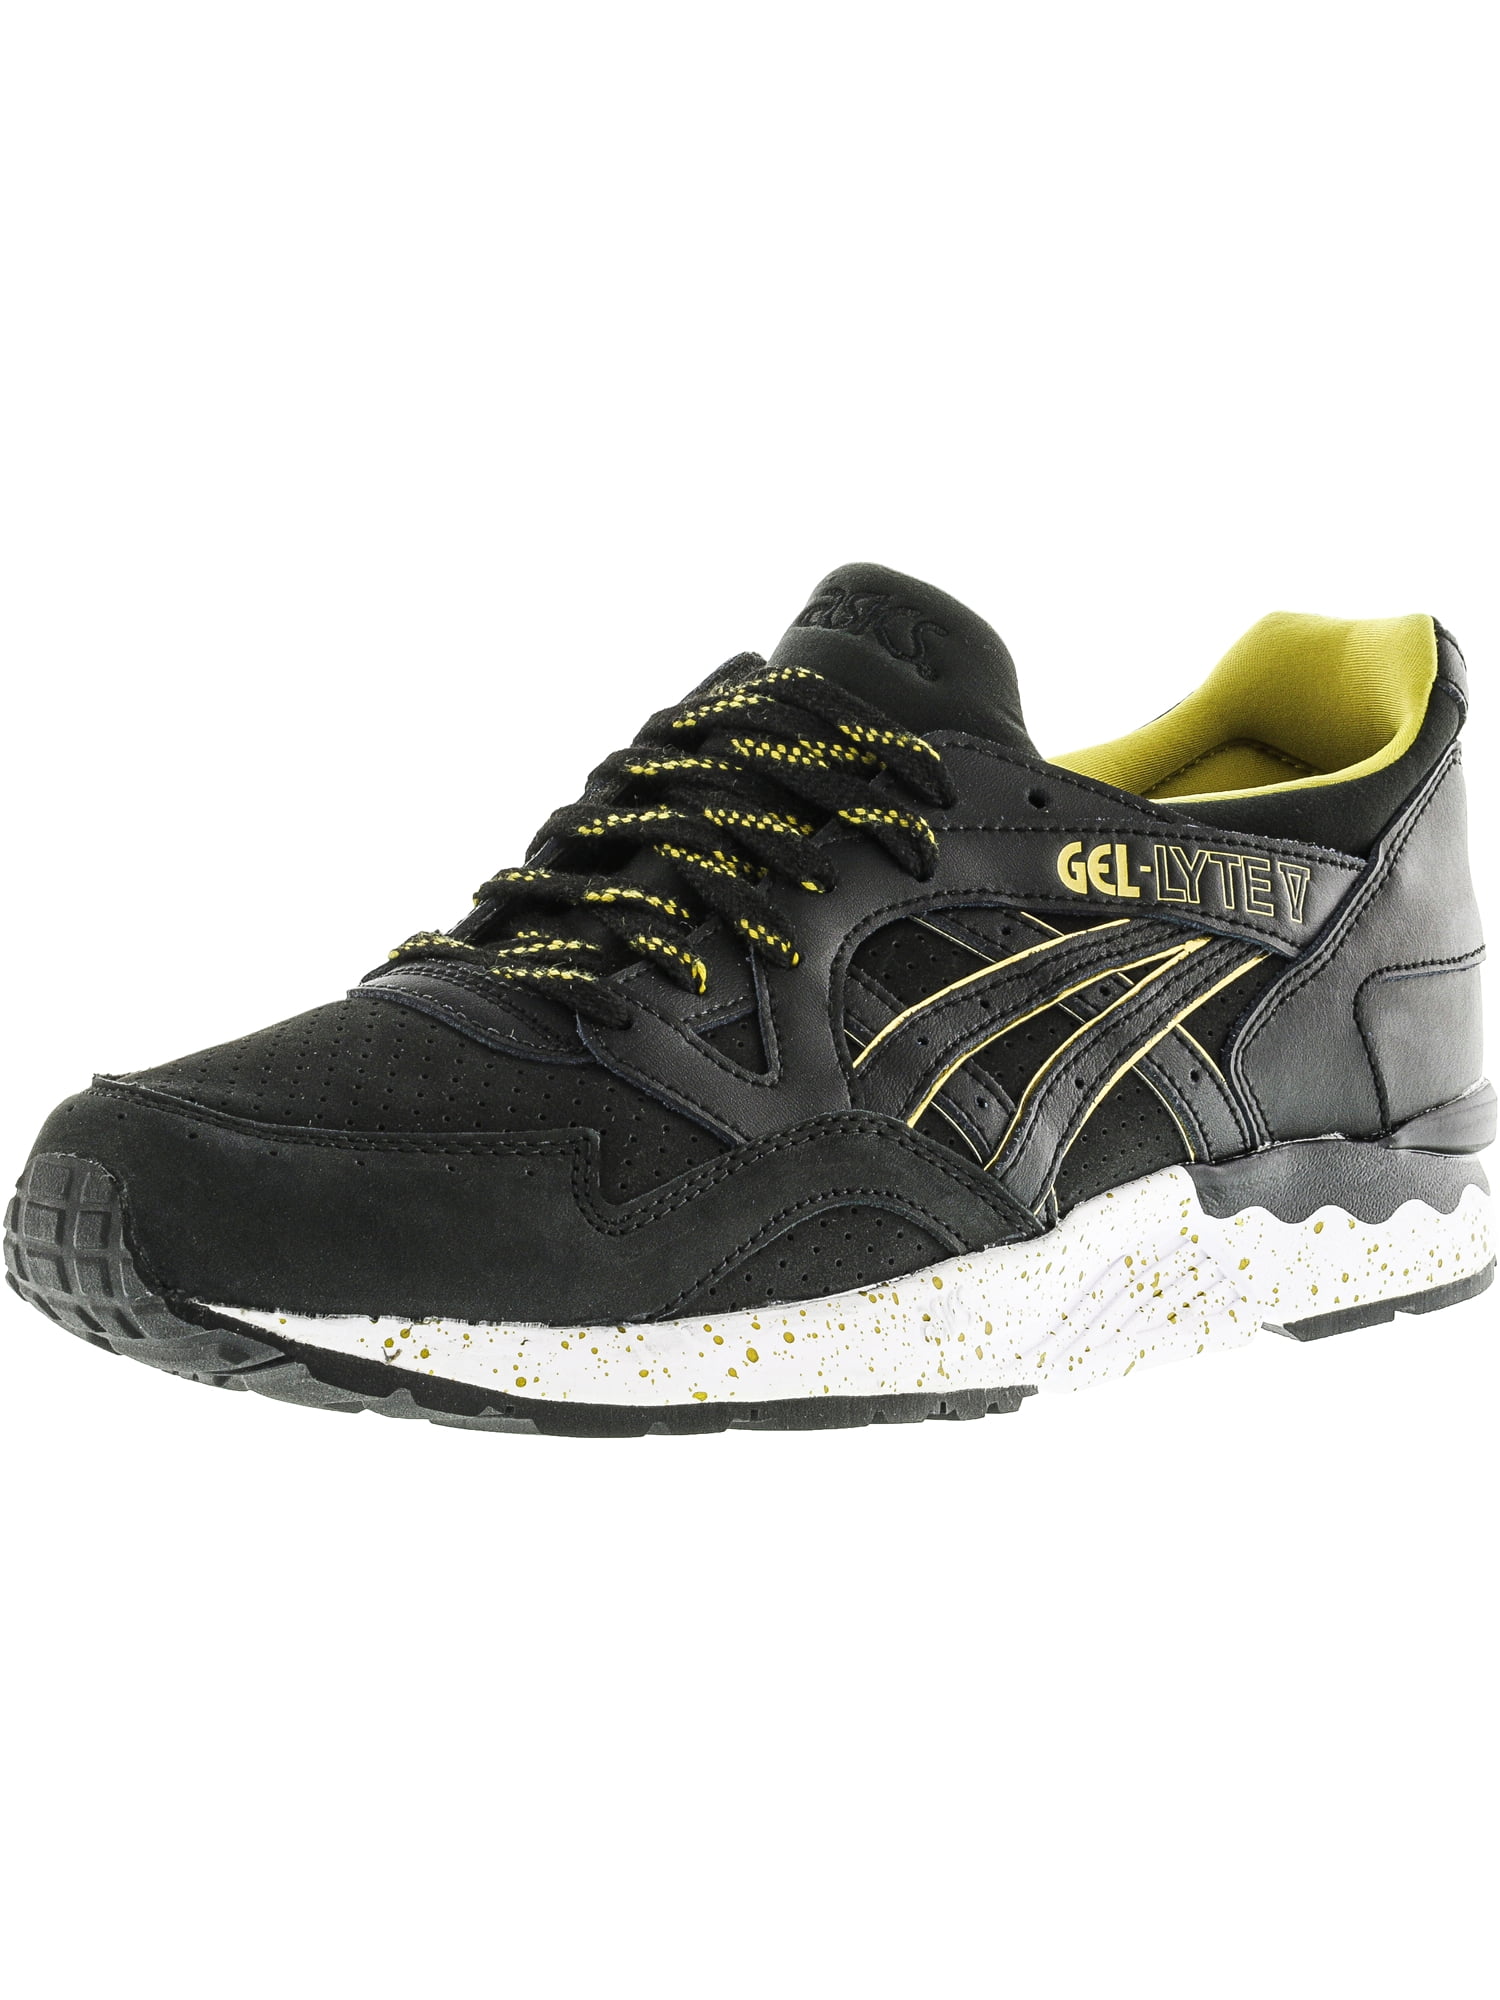 Resentimiento Walter Cunningham Diligencia Asics Men's Gel-Lyte V Black / Gold Speckled Ankle-High Running Shoe - 9.5M  - Walmart.com